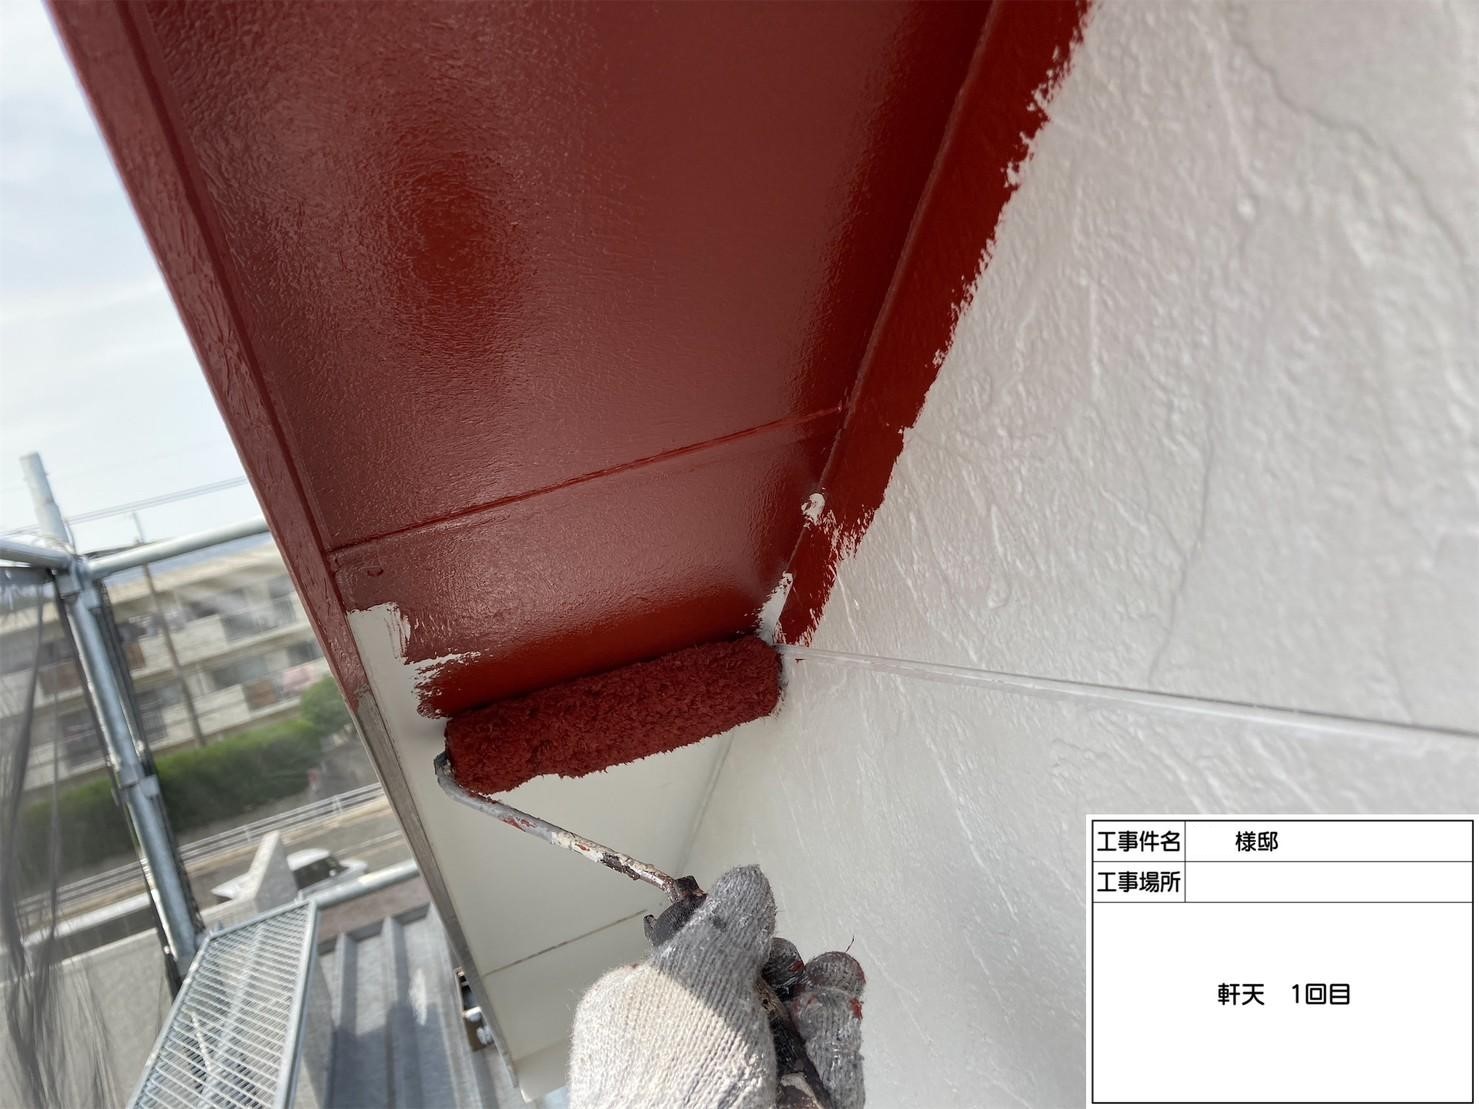 福岡県福岡市城南区田島のM様邸で新築時の色を再現する外壁塗装と屋根塗装工事を行いました。5/26完成です。【ホームページより】